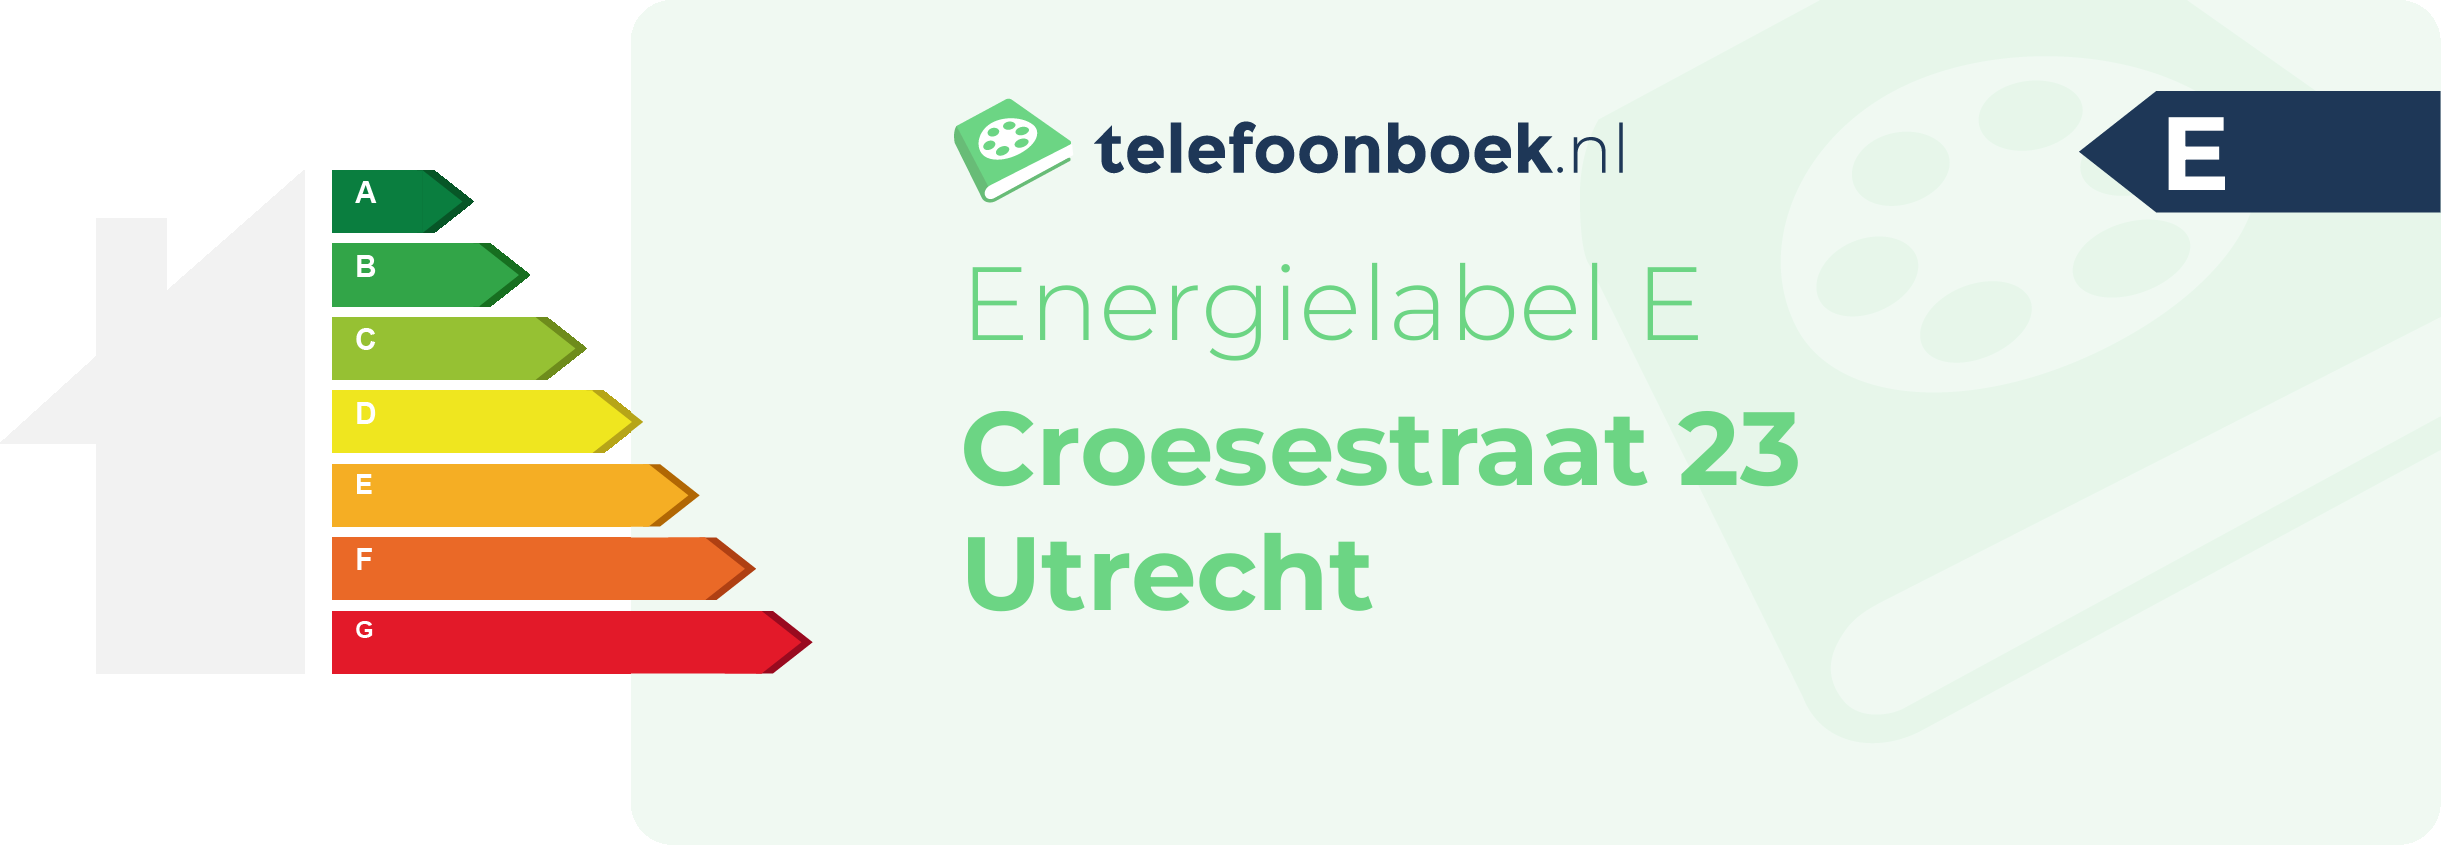 Energielabel Croesestraat 23 Utrecht